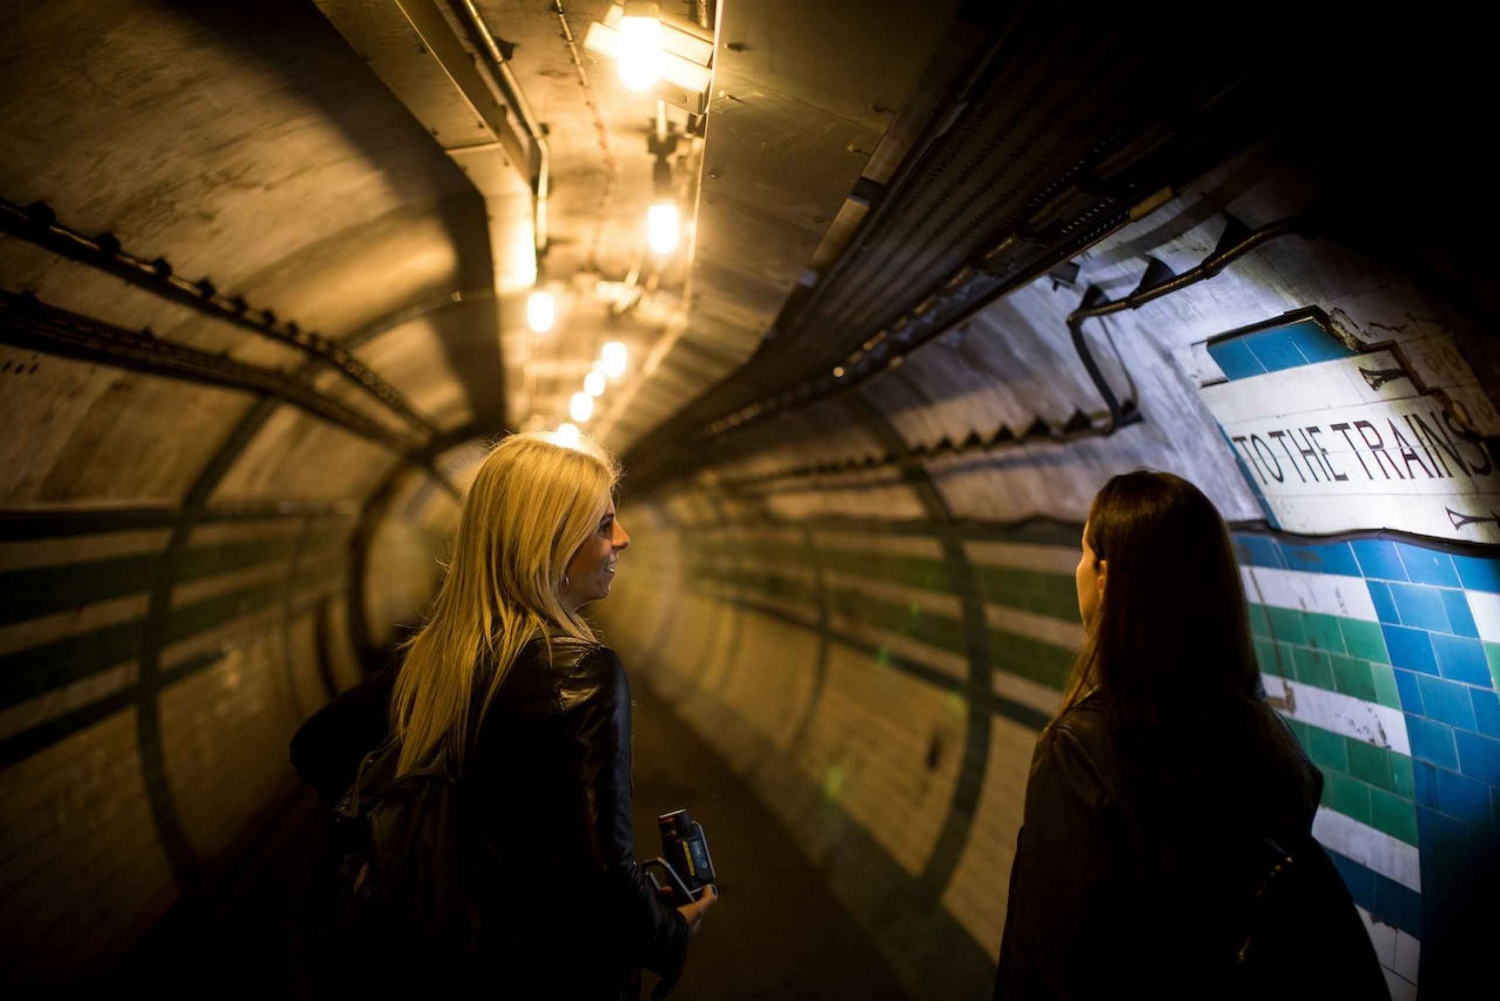 Visita oculta en metro - Piccadilly Circus: el corazón de Londres